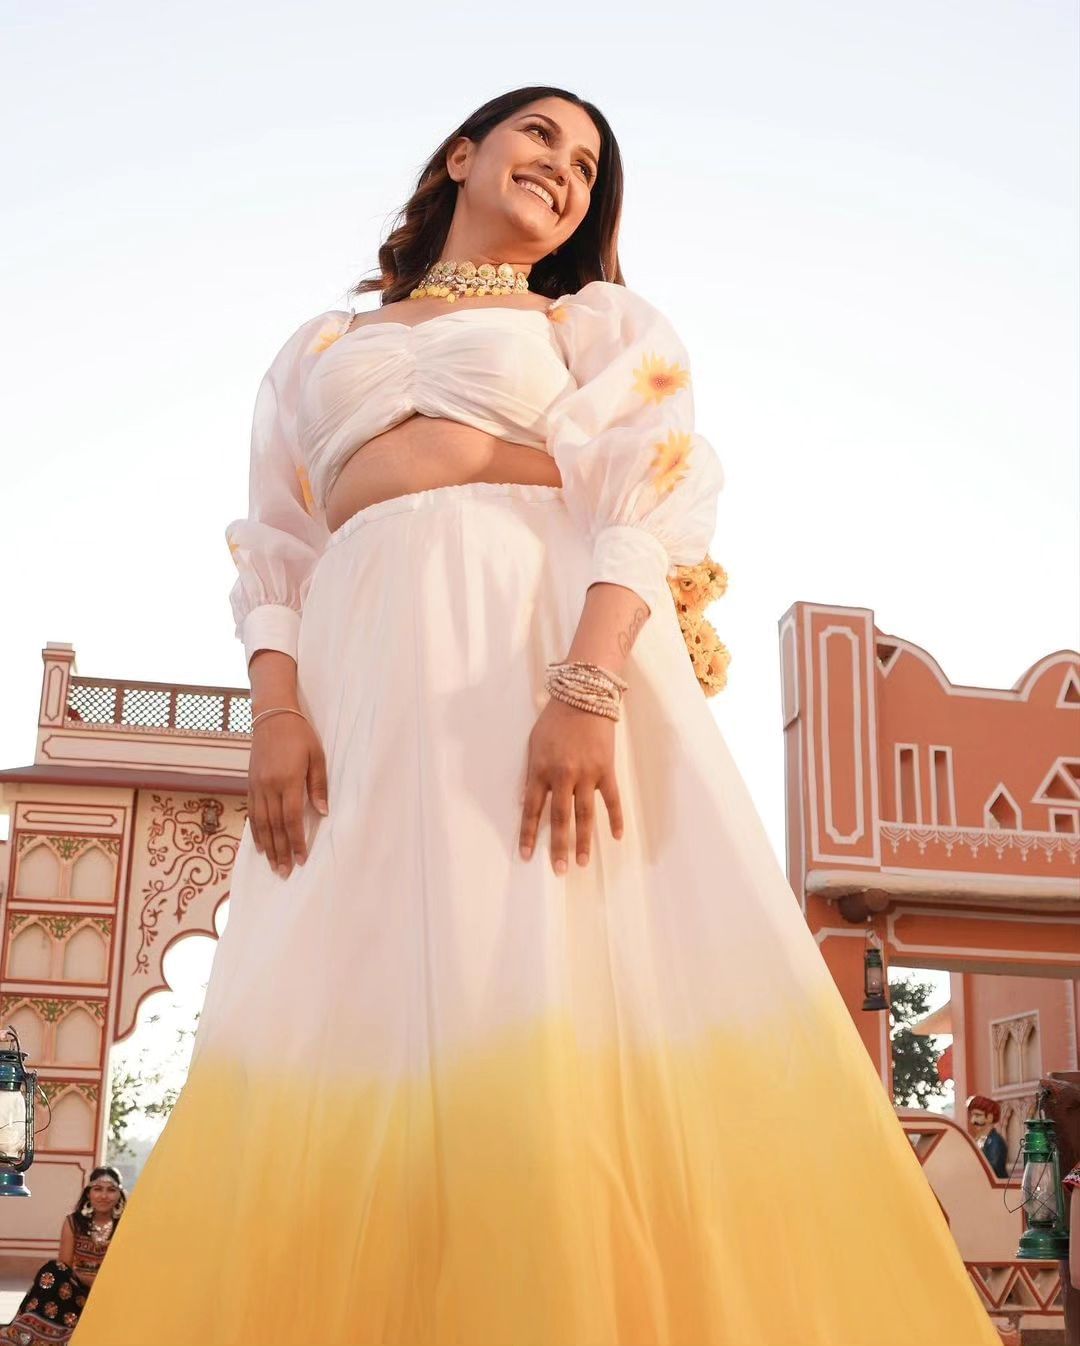 दुल्हन की ड्रेस में हरियाणवीं डांसर सपना चौधरी ने माडल संग किया रैंप वाक - Sapna  Choudhary did ramp walk in bride dress with models